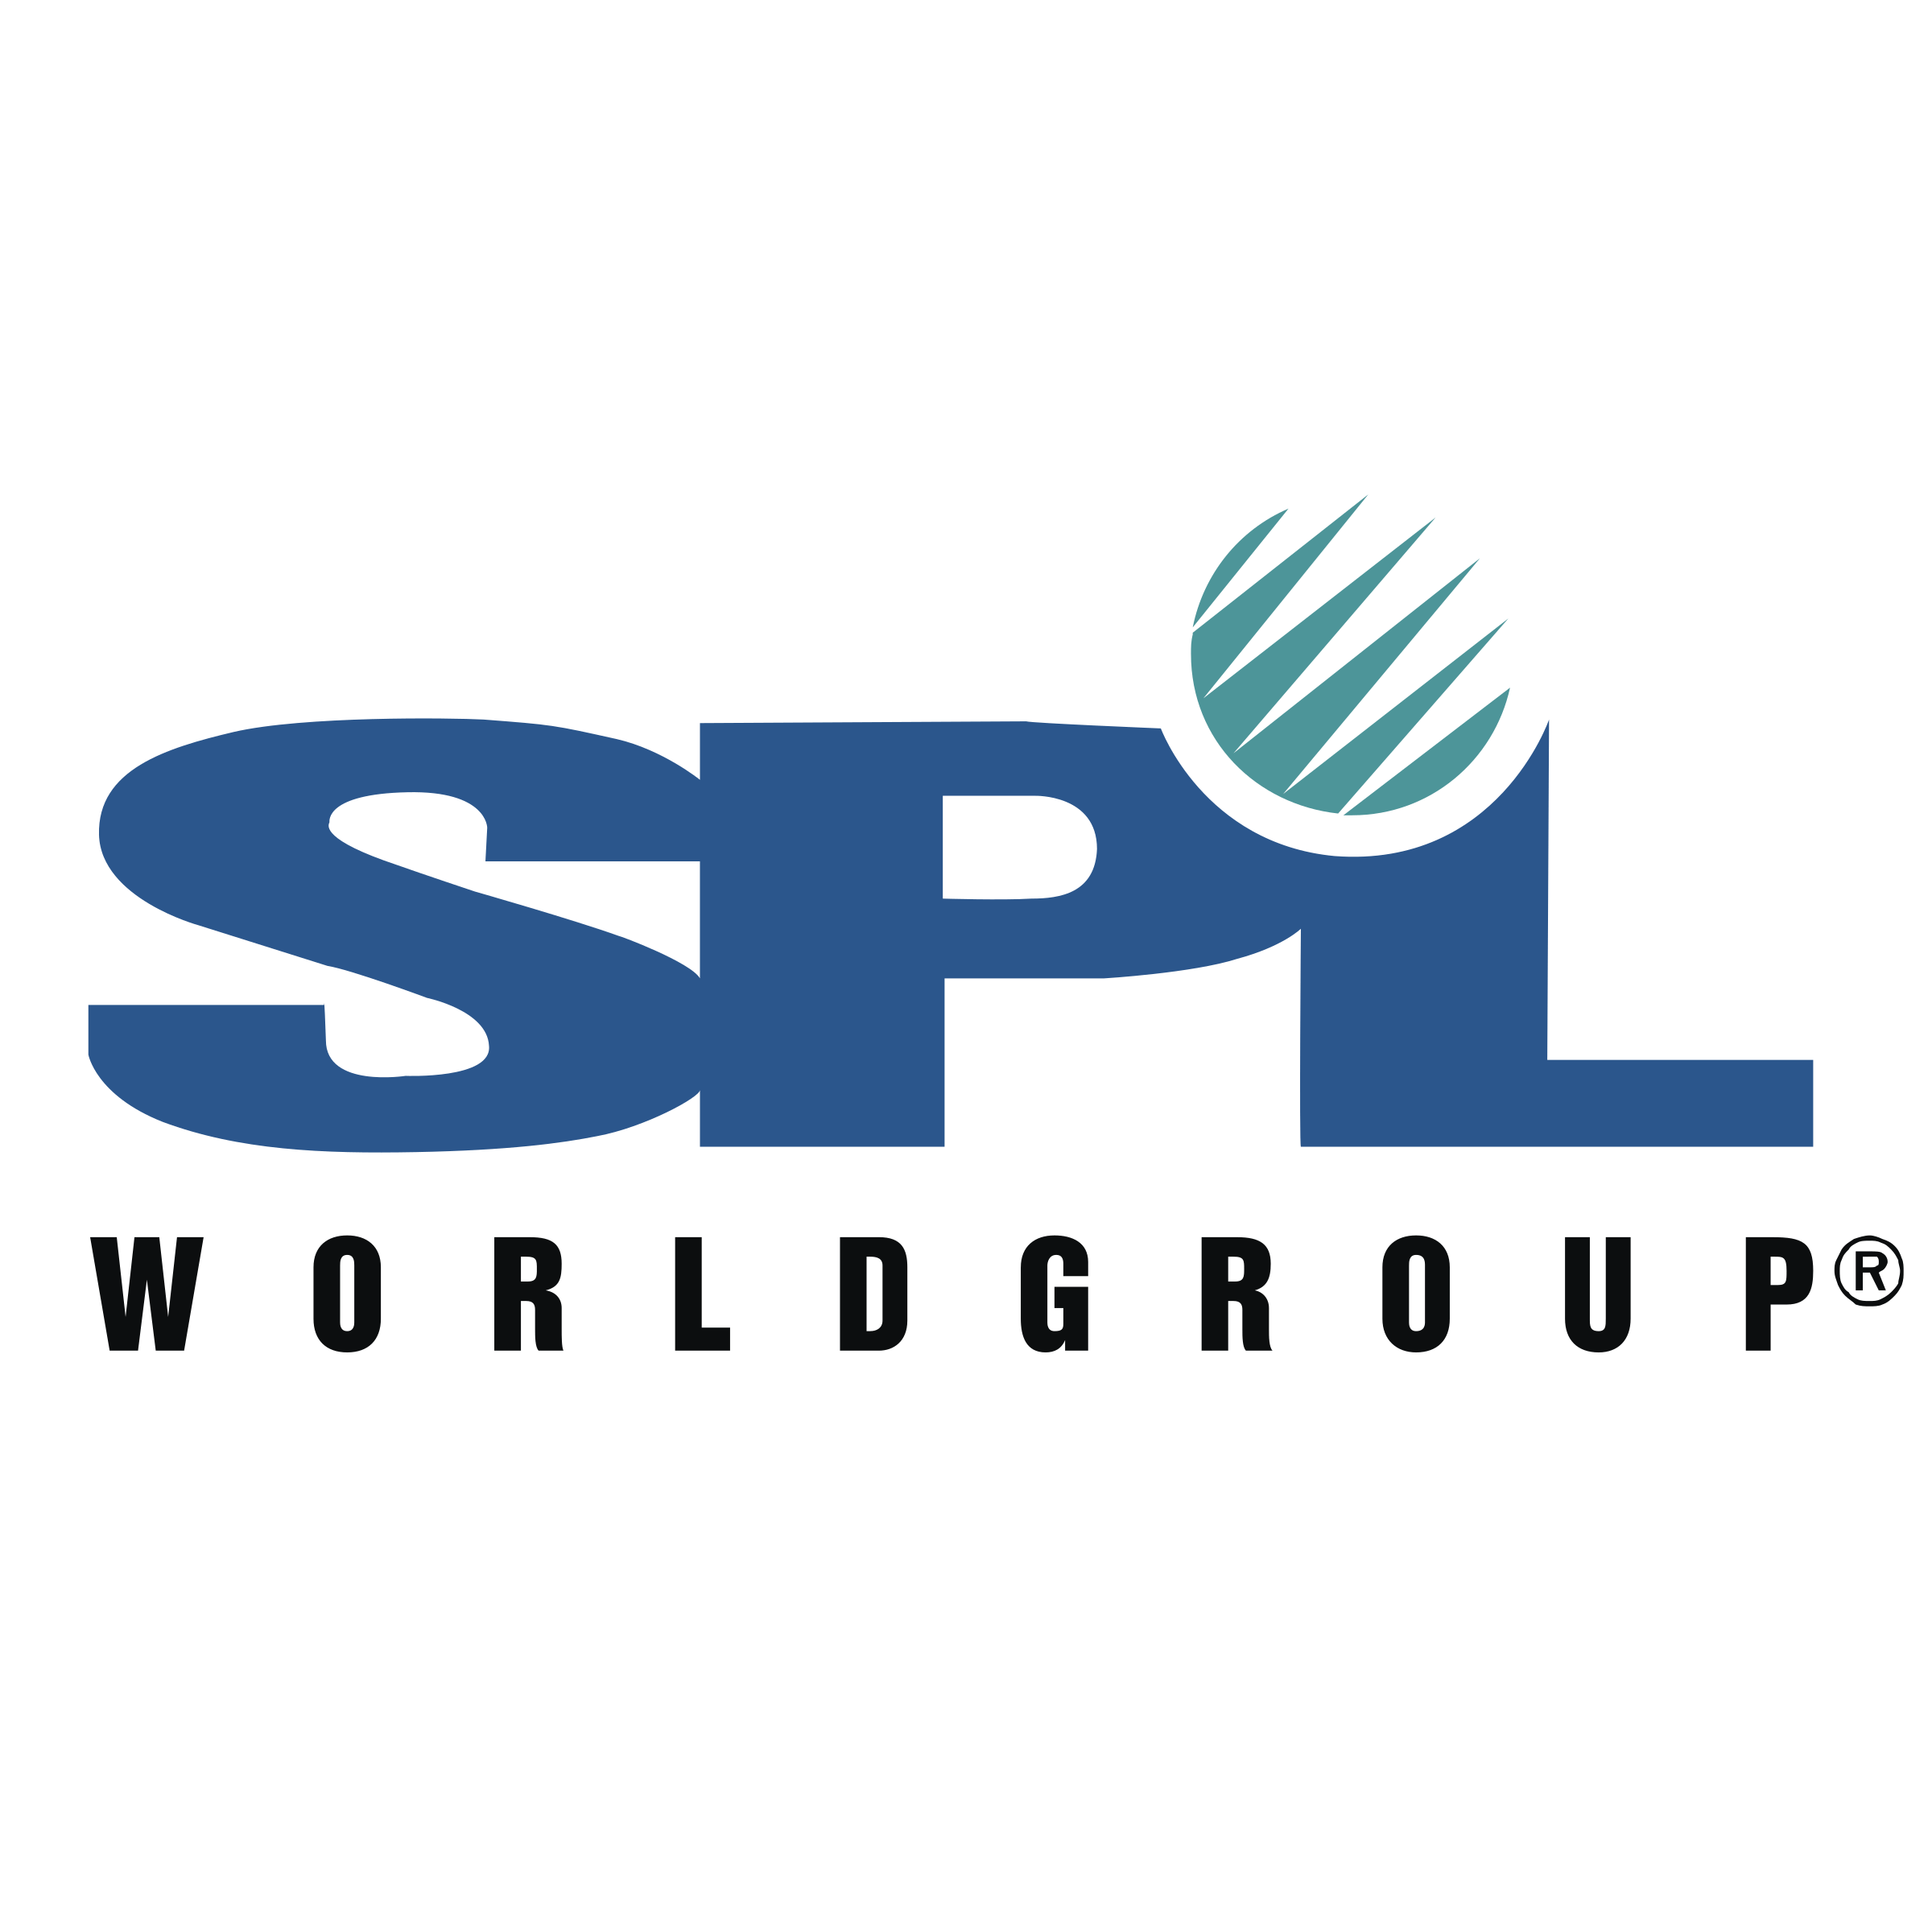 SPL Logo - SPL Wprldgroup Logo PNG Transparent & SVG Vector - Freebie Supply